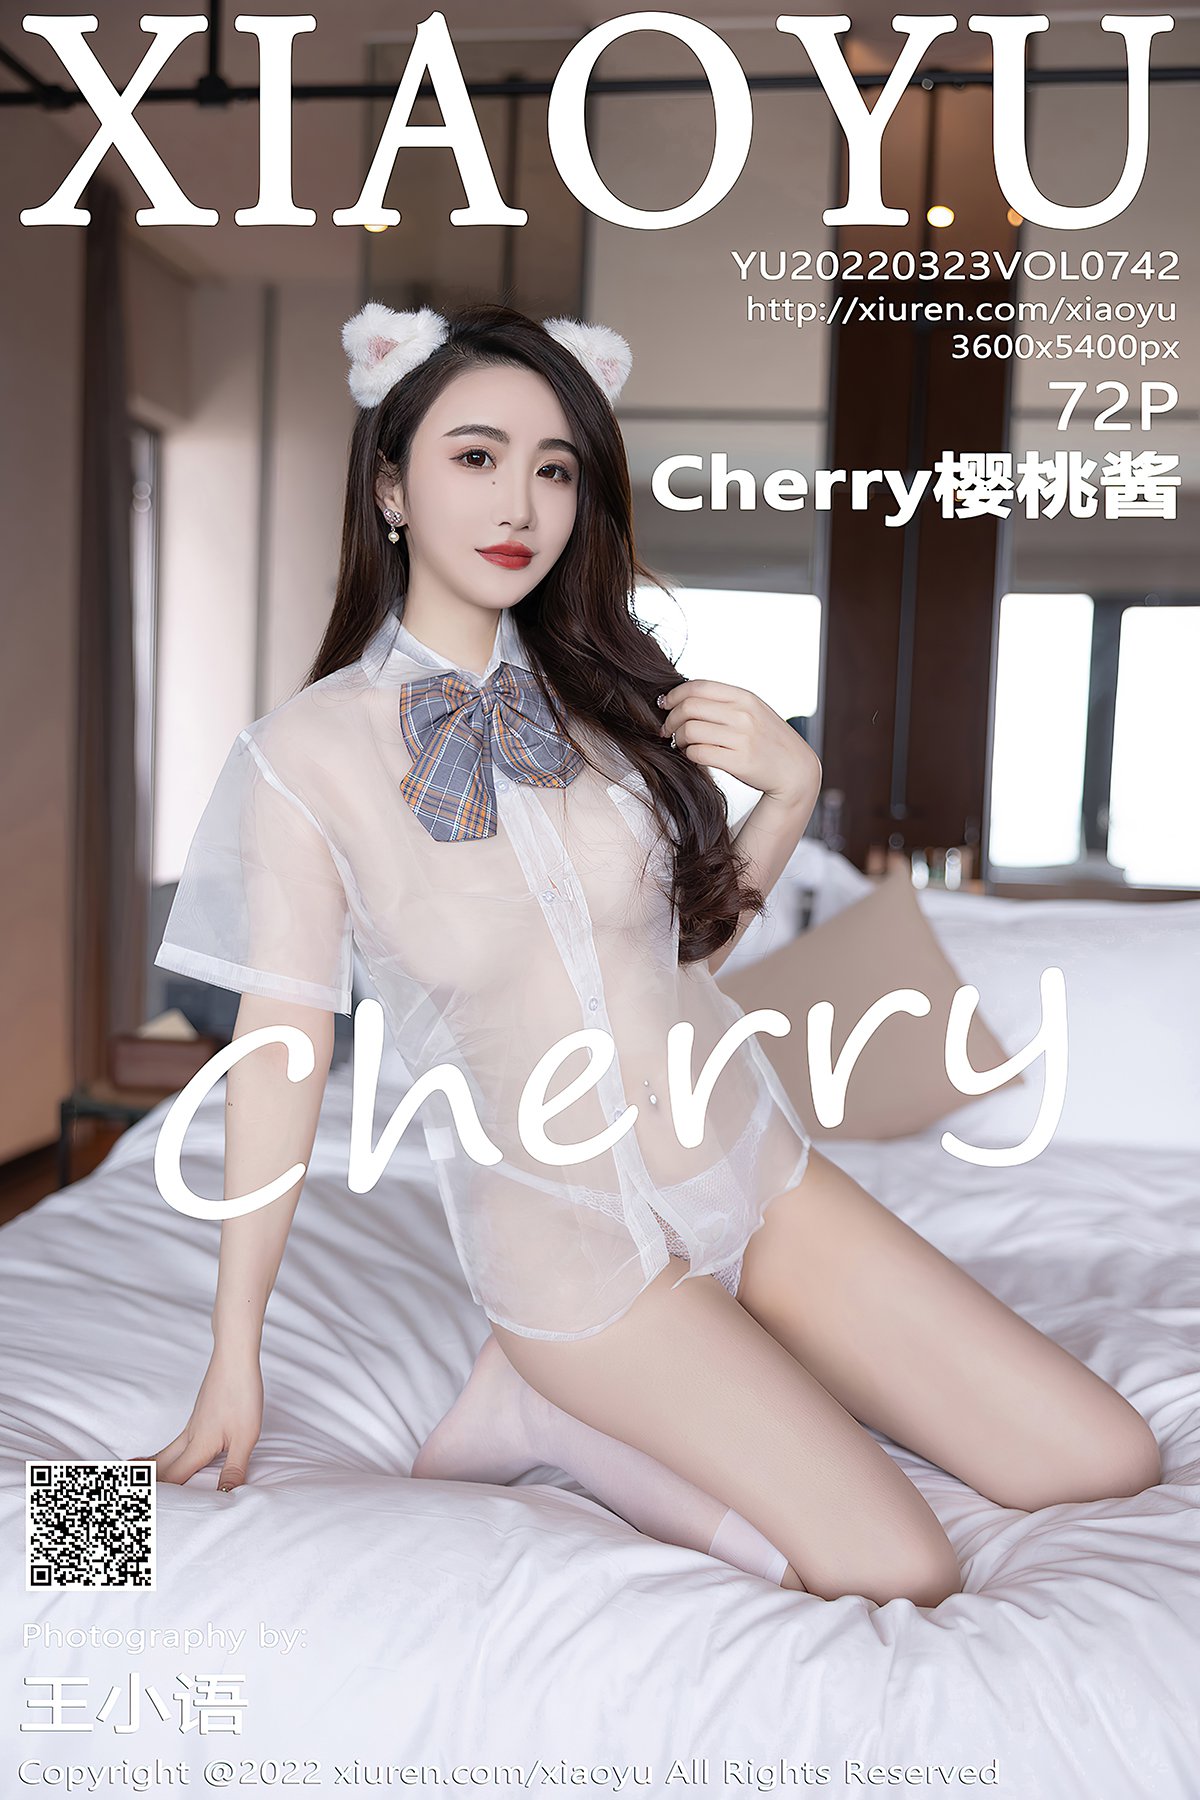 XiaoYu语画界 Vol 742 Cherry樱桃酱 000